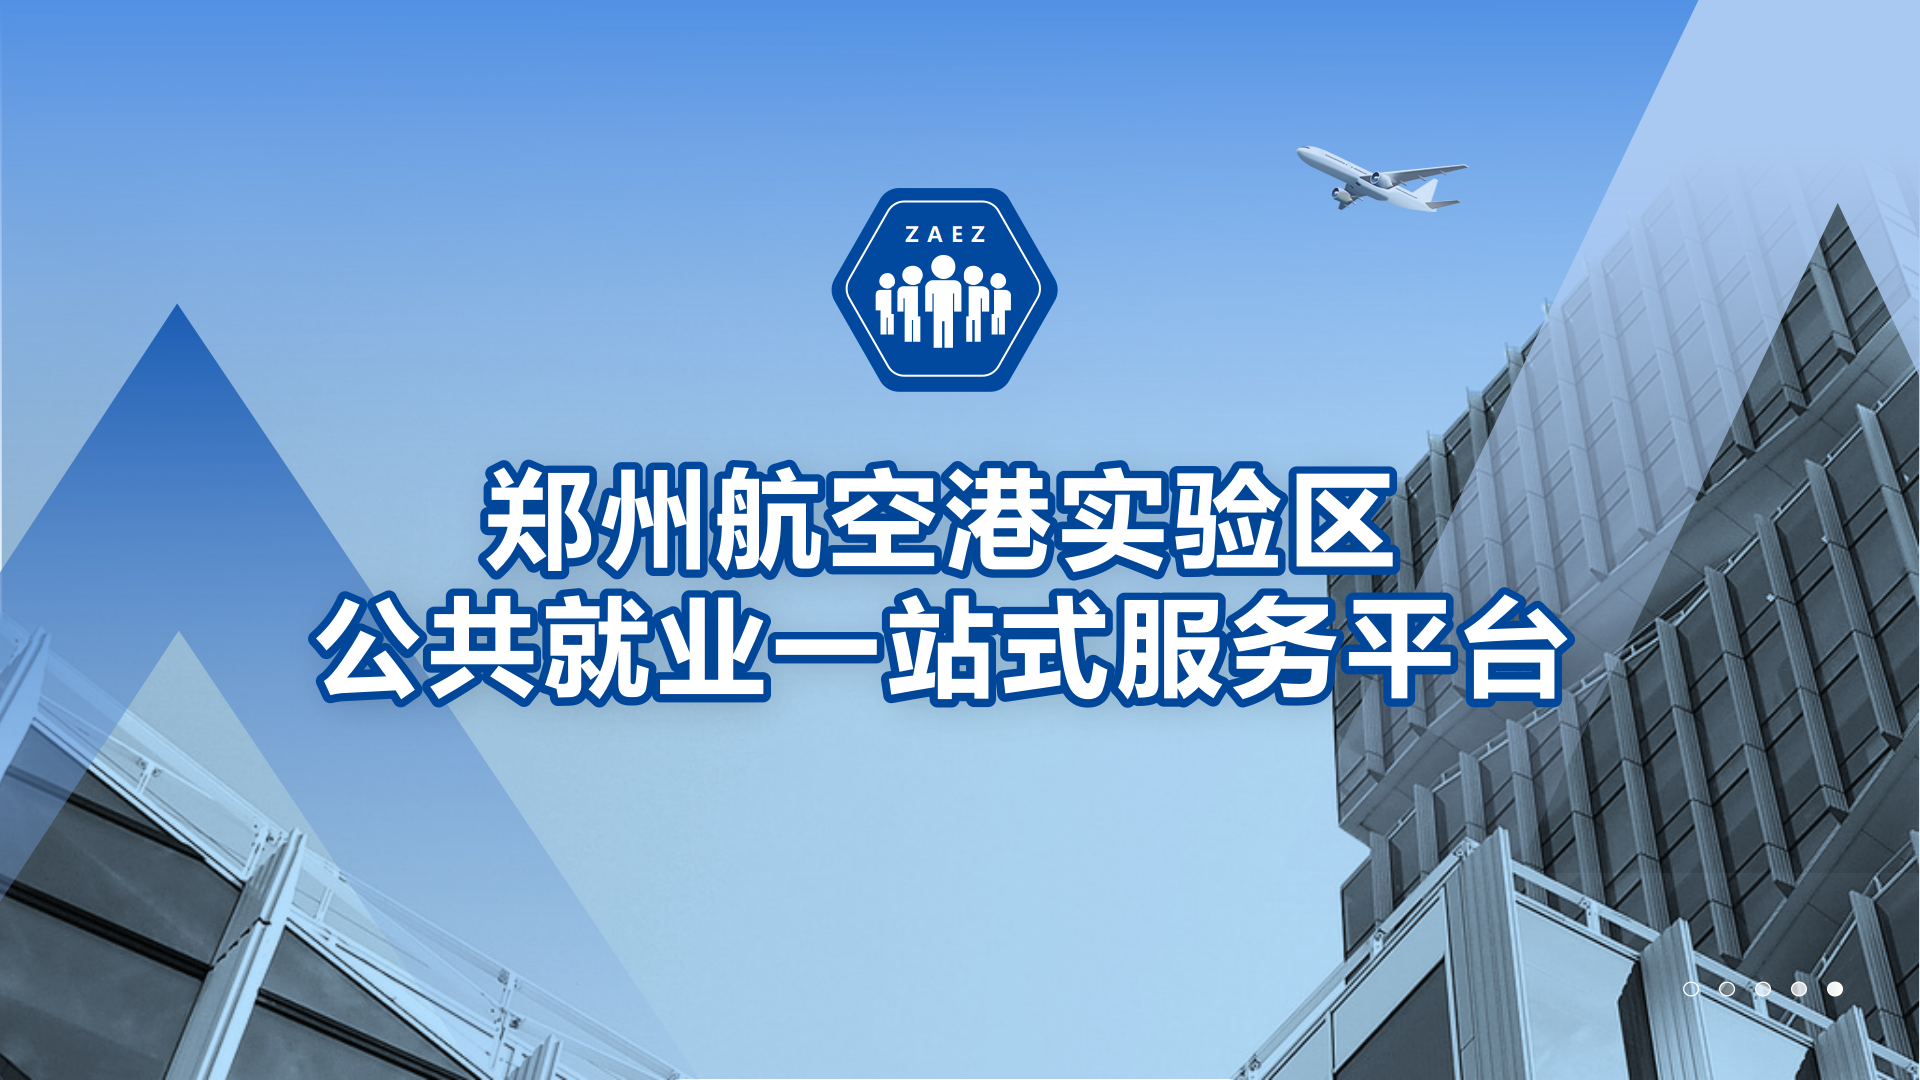 郑州航空港区公共就业一站式服务平台系统介绍 - 标准版1.0_01.png